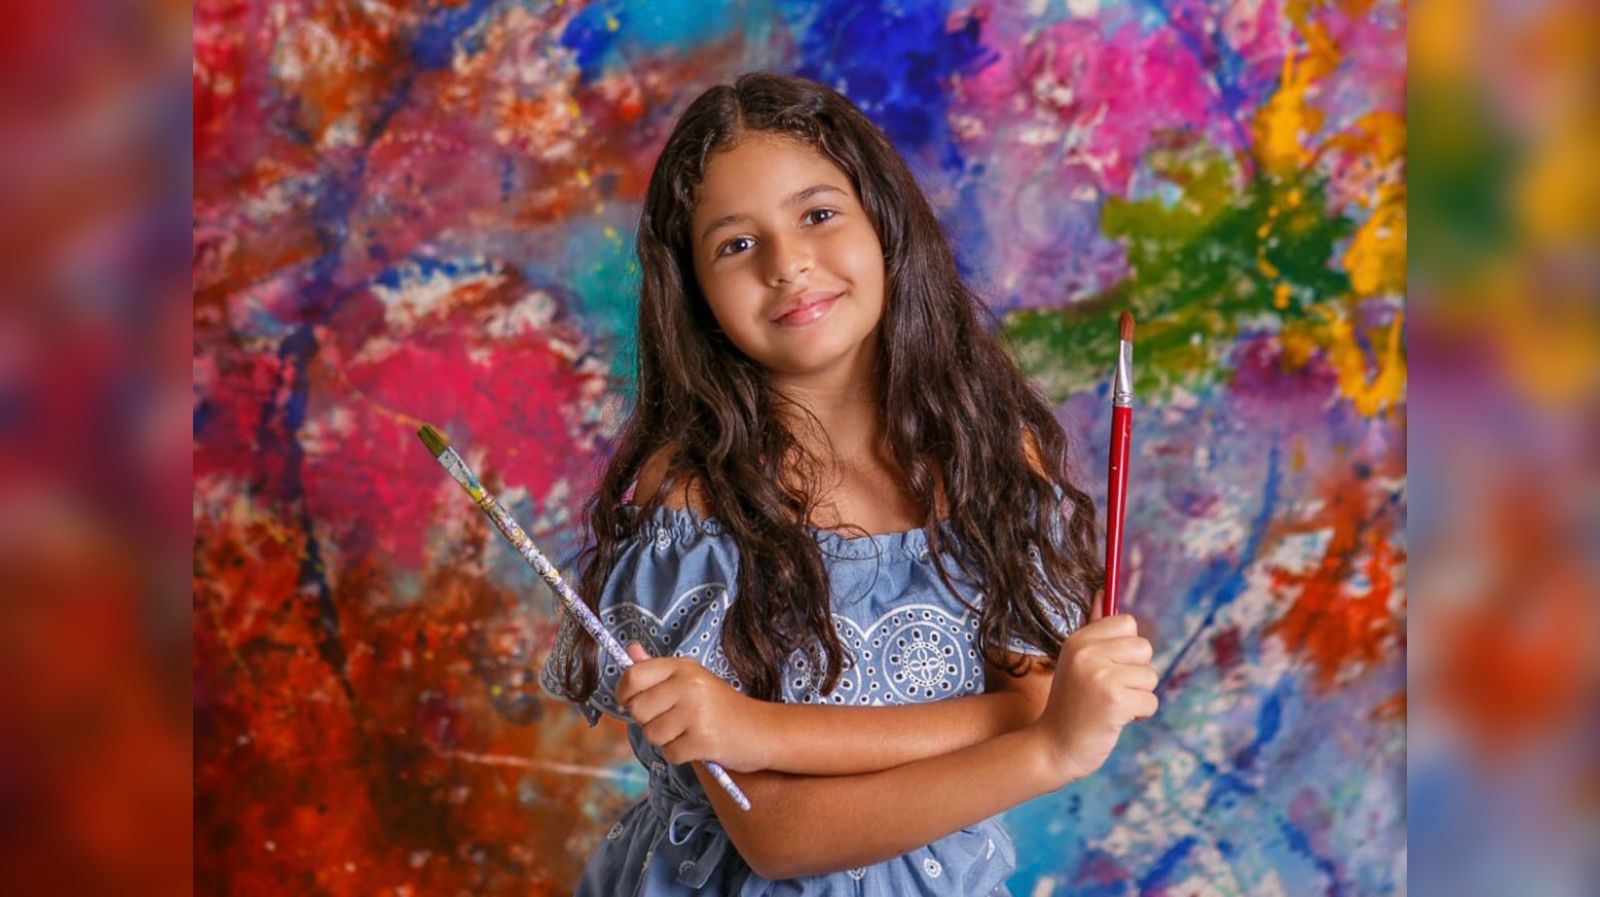 Menina de 10 anos terá obras expostas no Louvre: “Posso testemunhar Jesus”